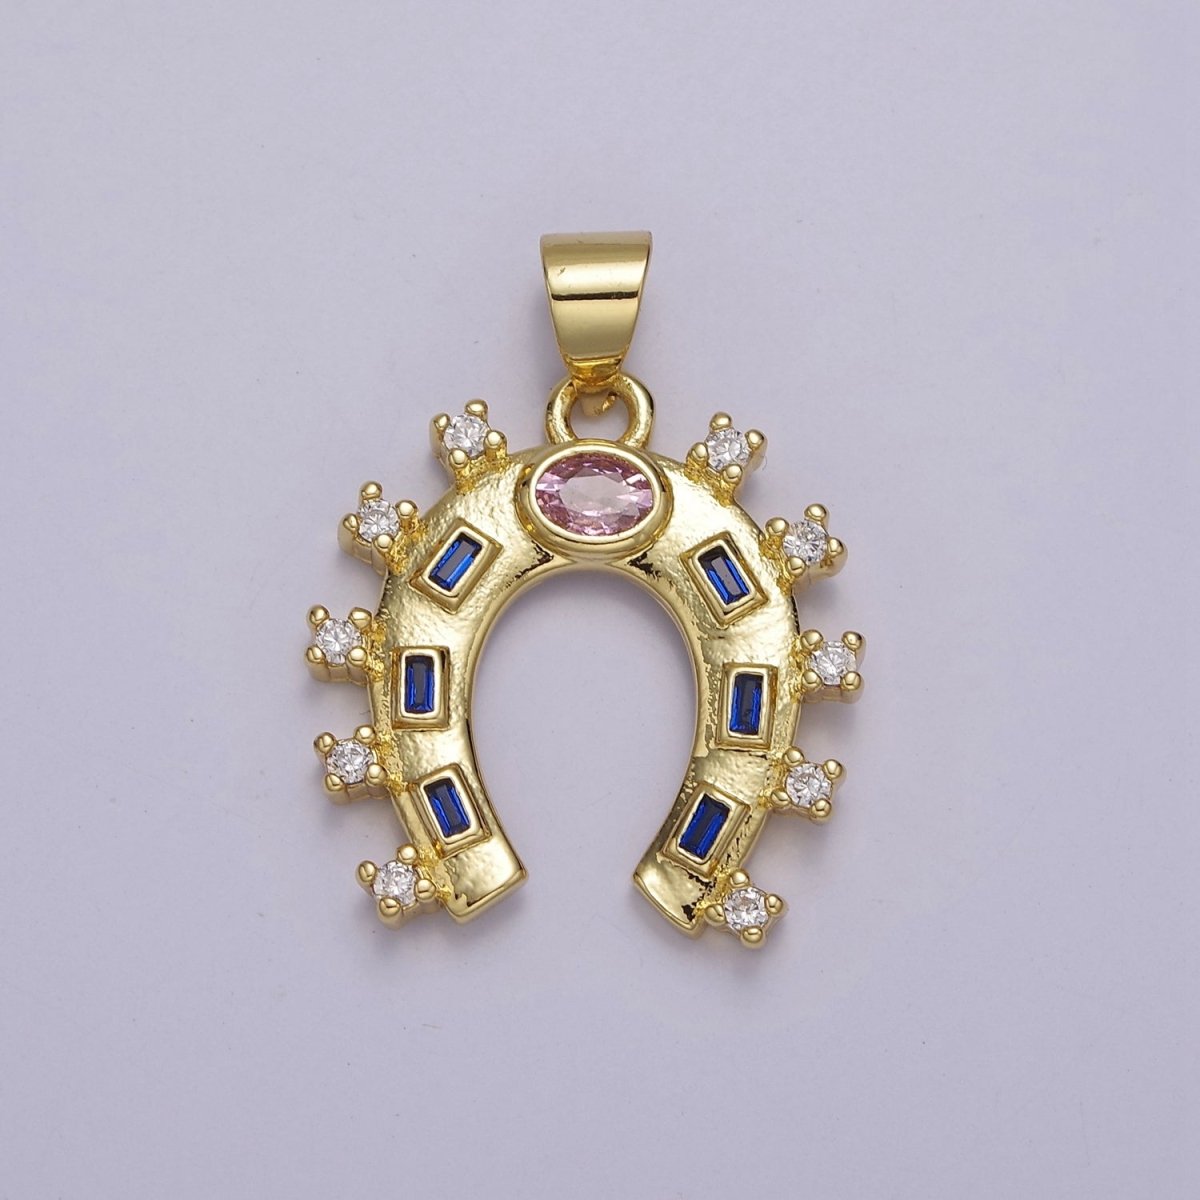 Gold Filled Horseshoe Charm Luck Horseshoe Pendant Necklace Bracelet Mini Horseshoe Pendant Lucky Jewelry Inspired J-427 - DLUXCA